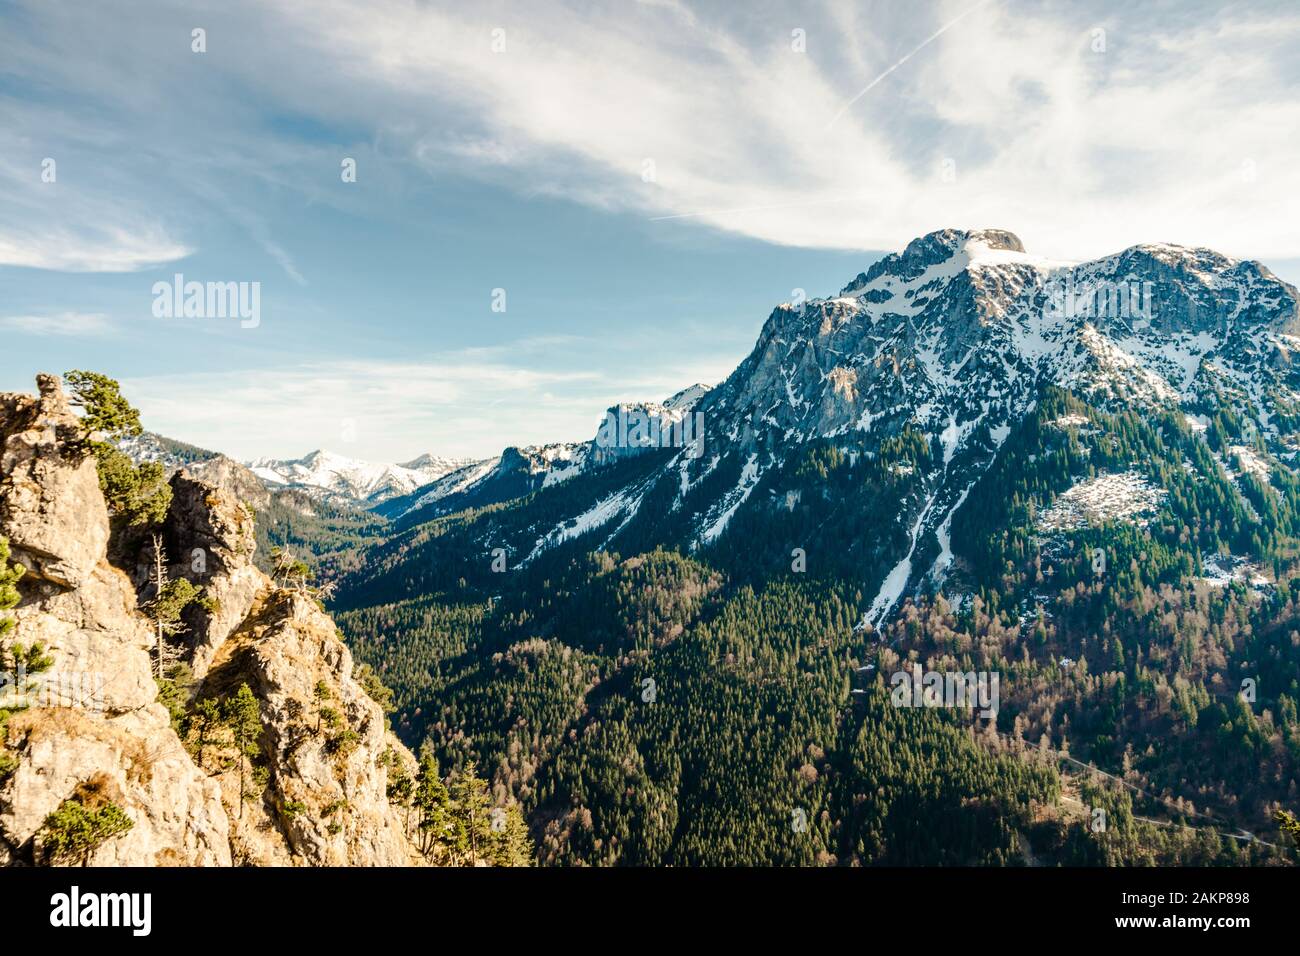 Schöner Blick auf die Berge mit Schnee und Bäumen Stockfoto